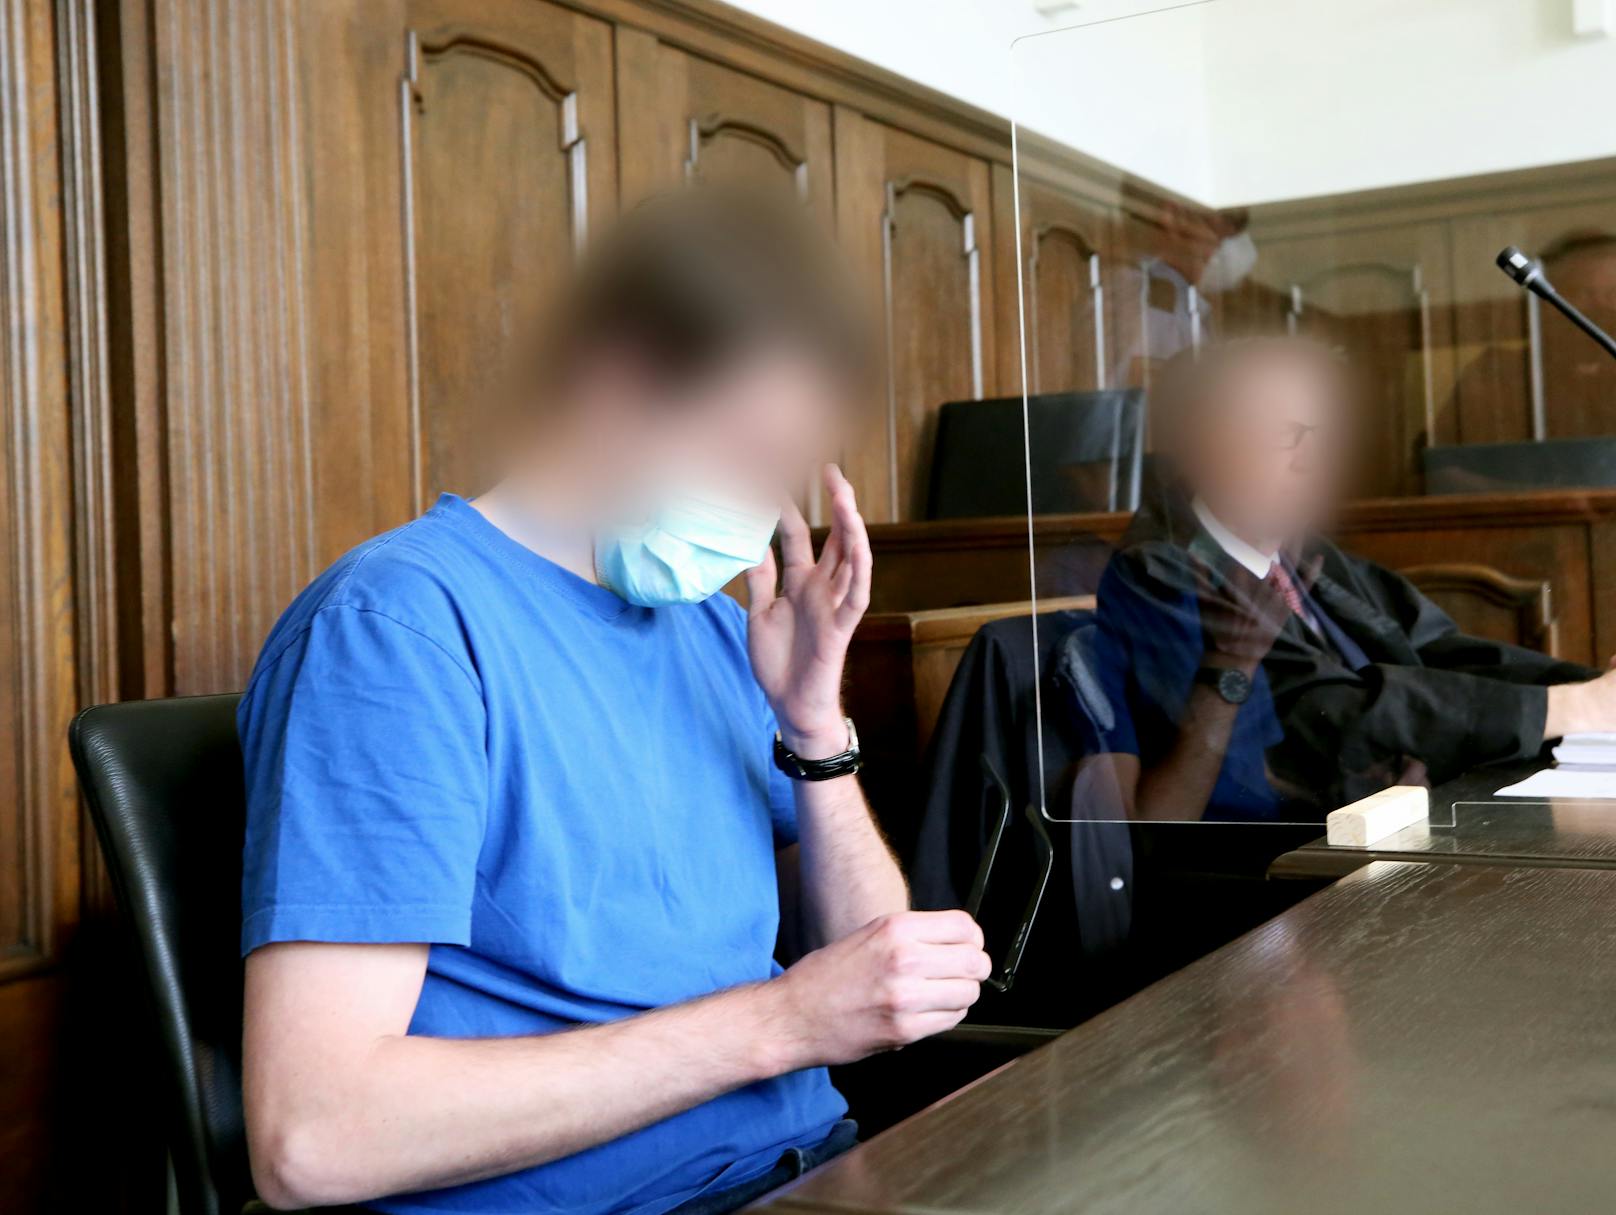 Ein 27-jähriger deutscher Soldat muss sich vor Gericht wegen mehrfachen Kindesmissbrauchs verantworten. Er soll vier Kinder 36-mal sexuell missbraucht haben.